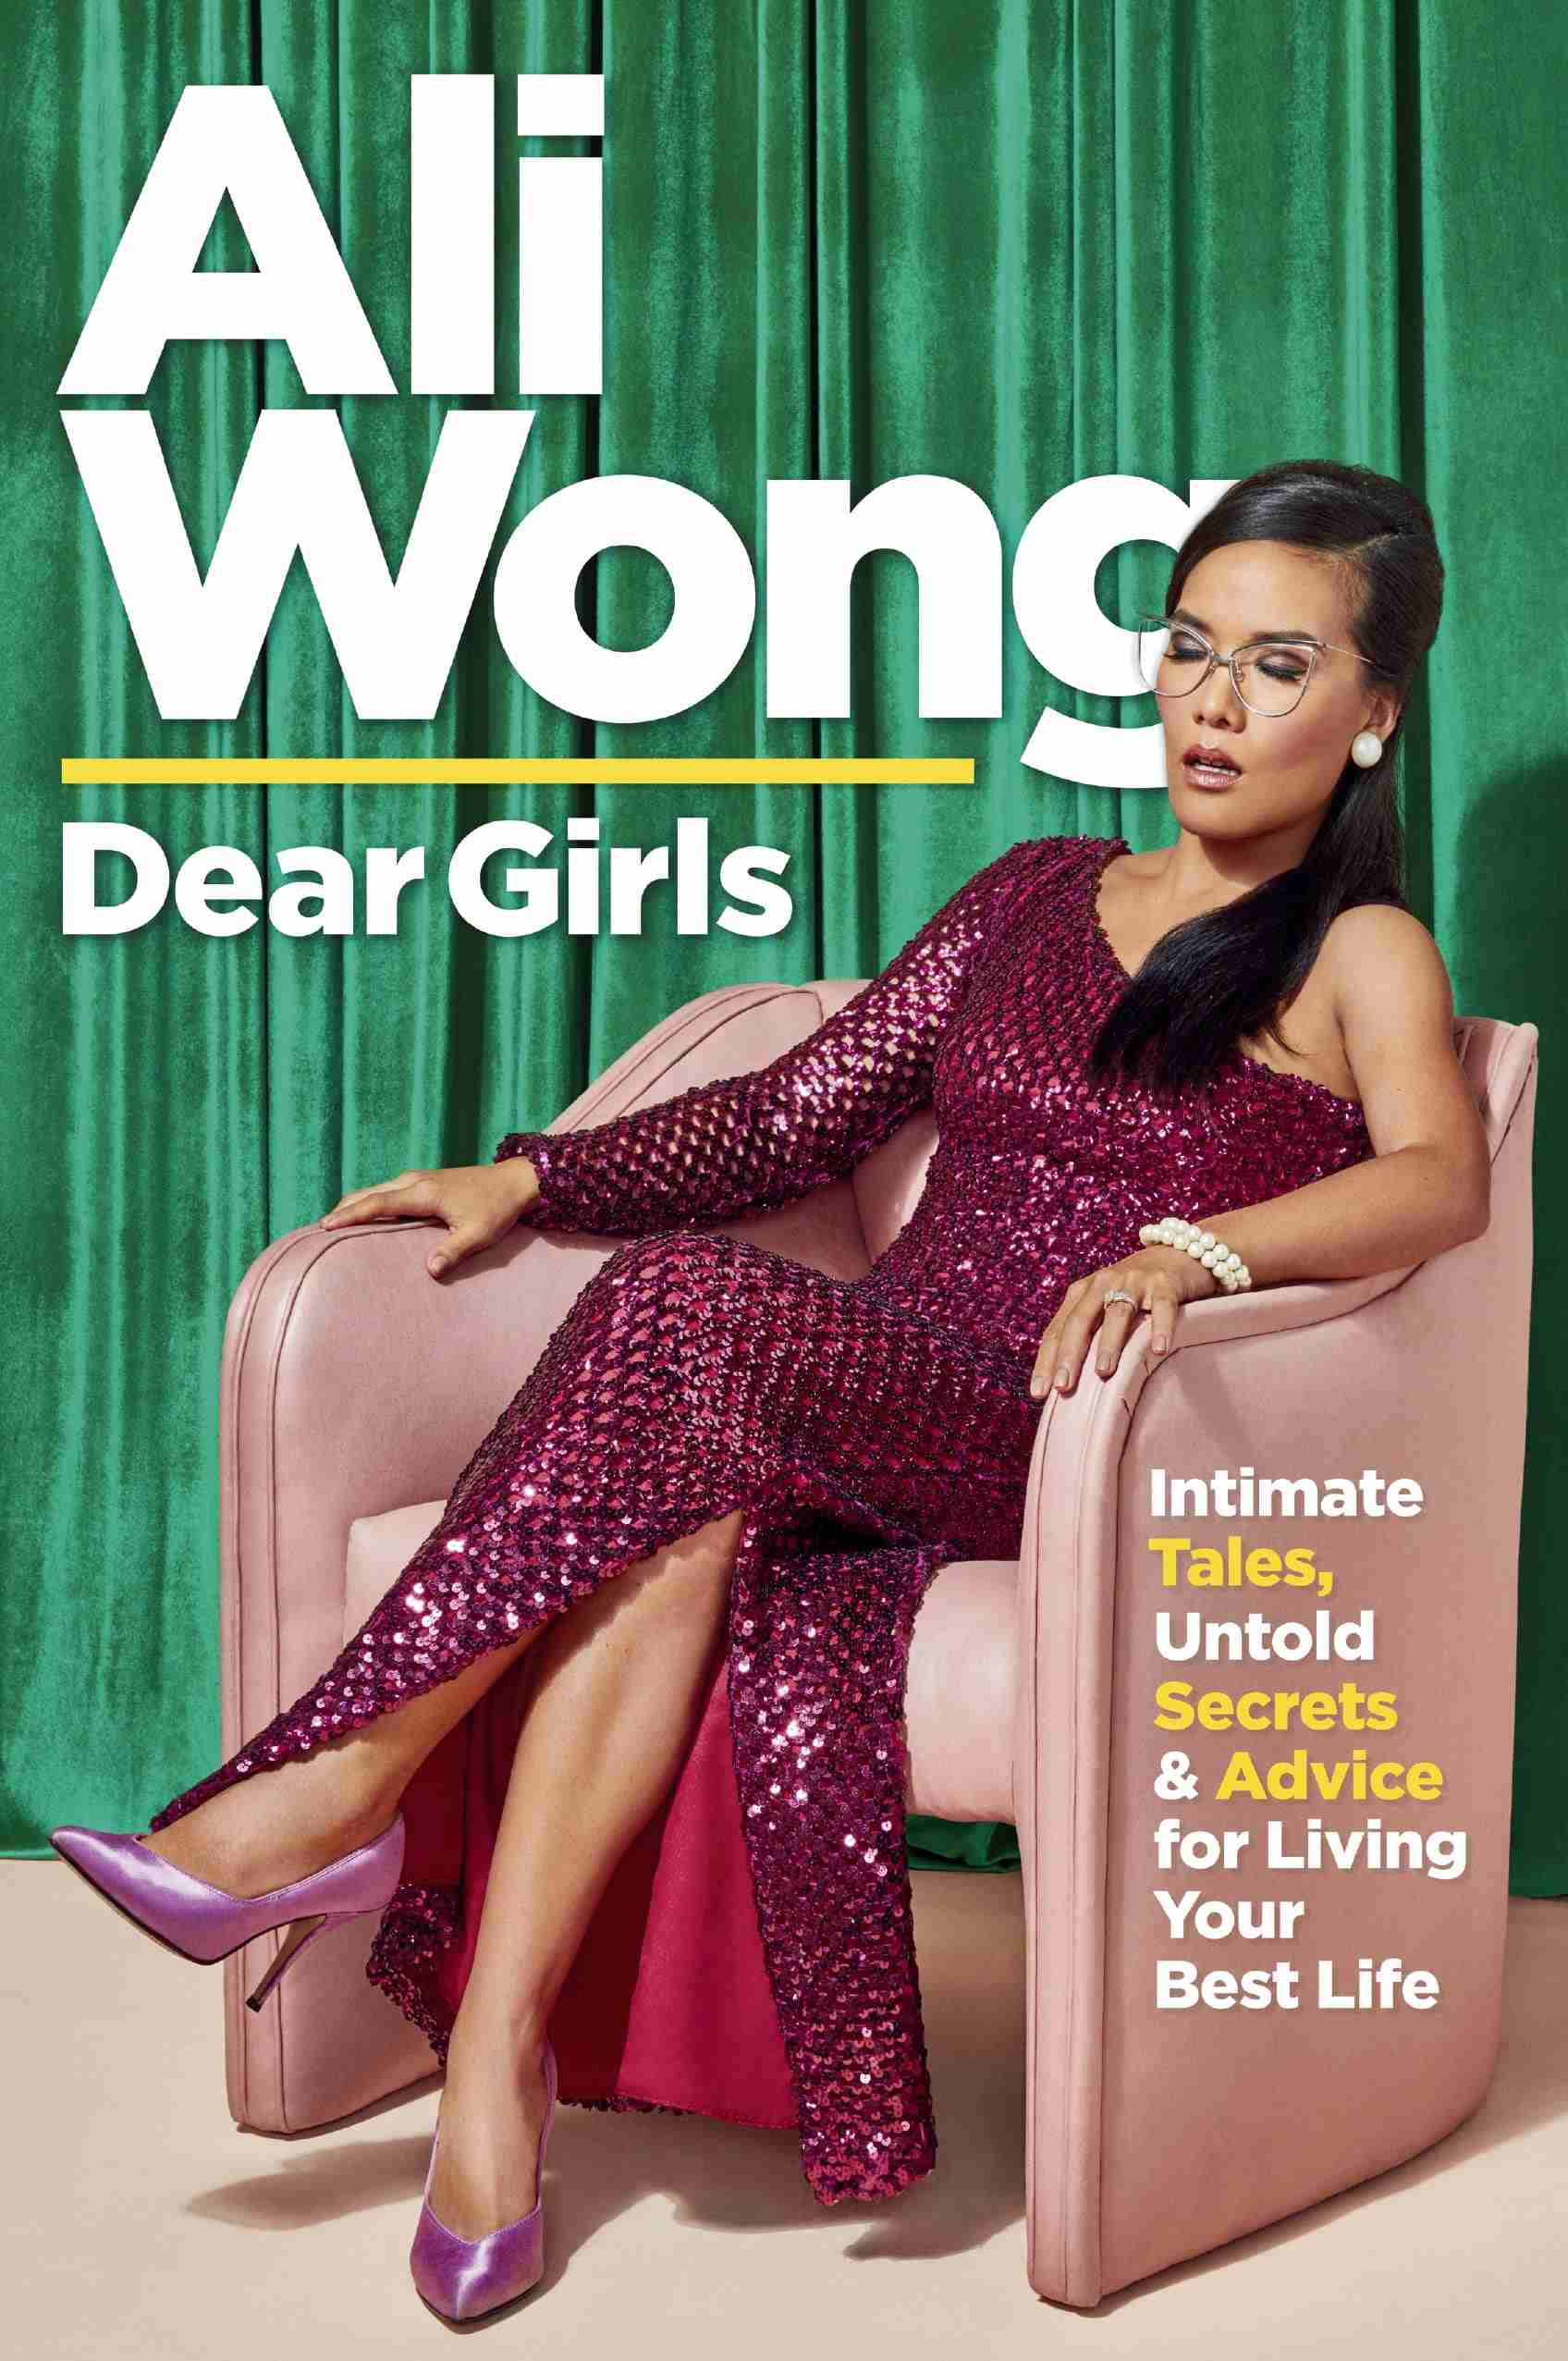 Ali Wong's Dear Girls book cover.